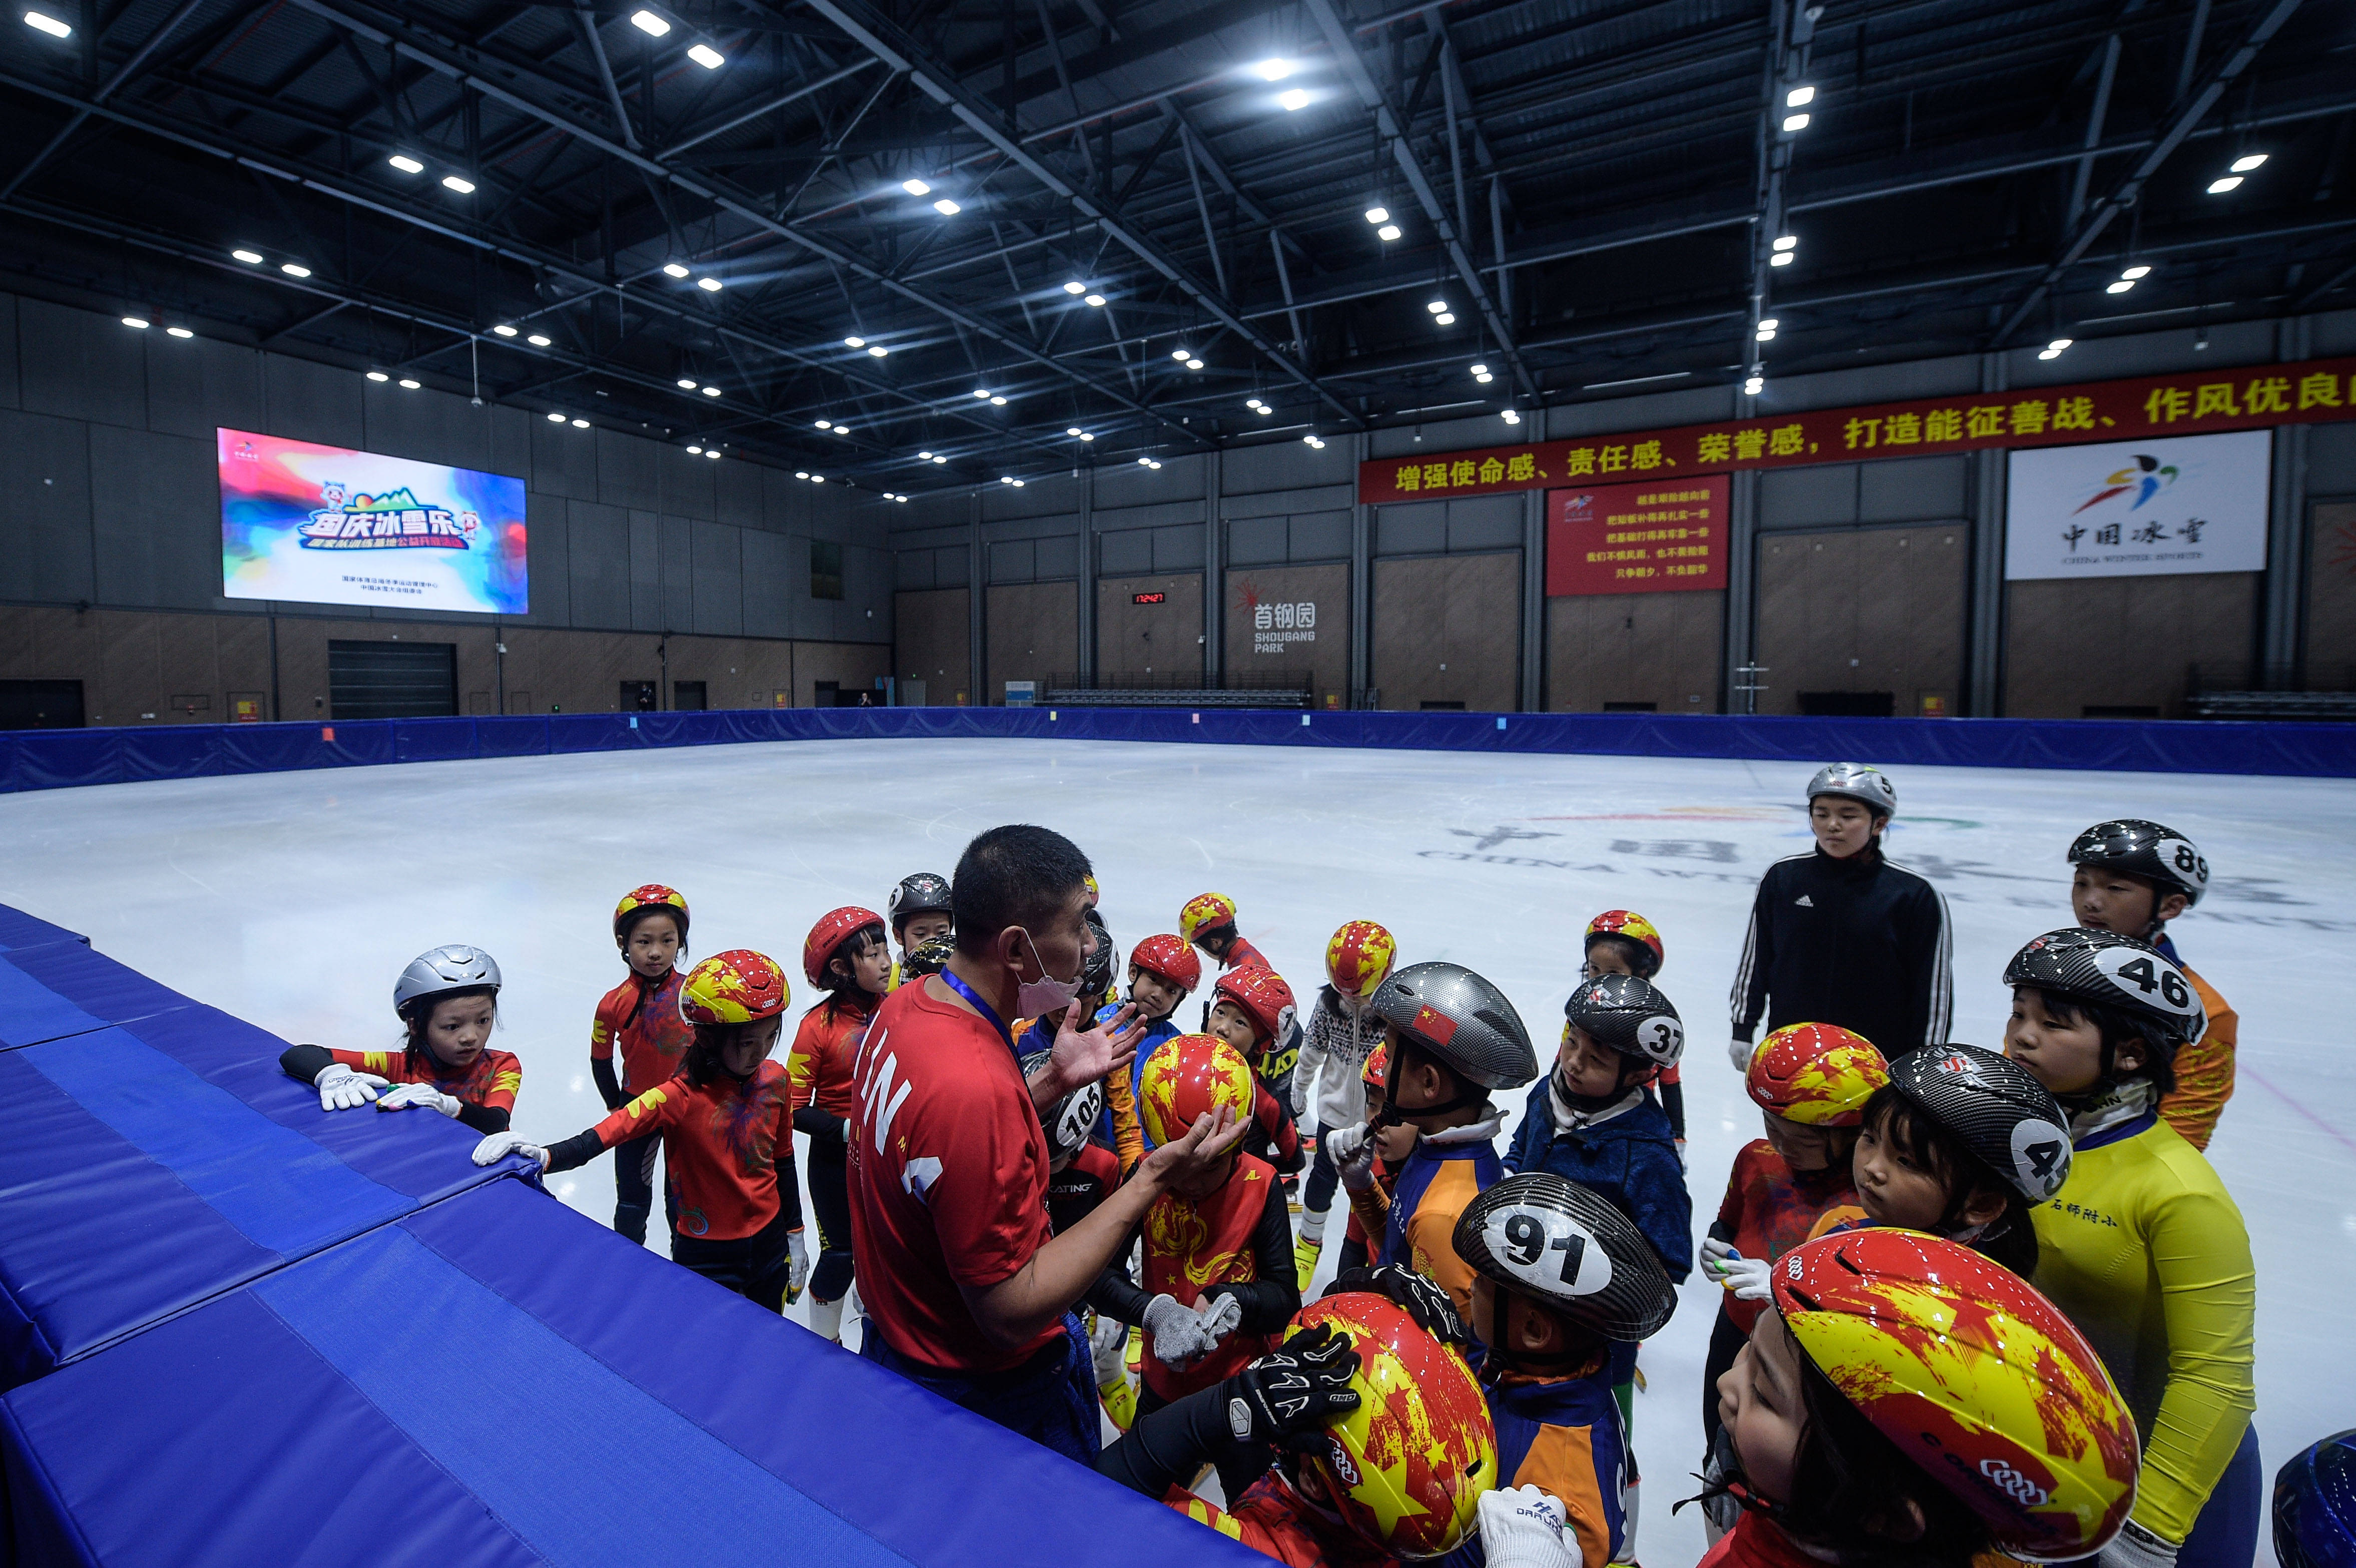 北京首钢园短道速滑训练馆首次对大众开放